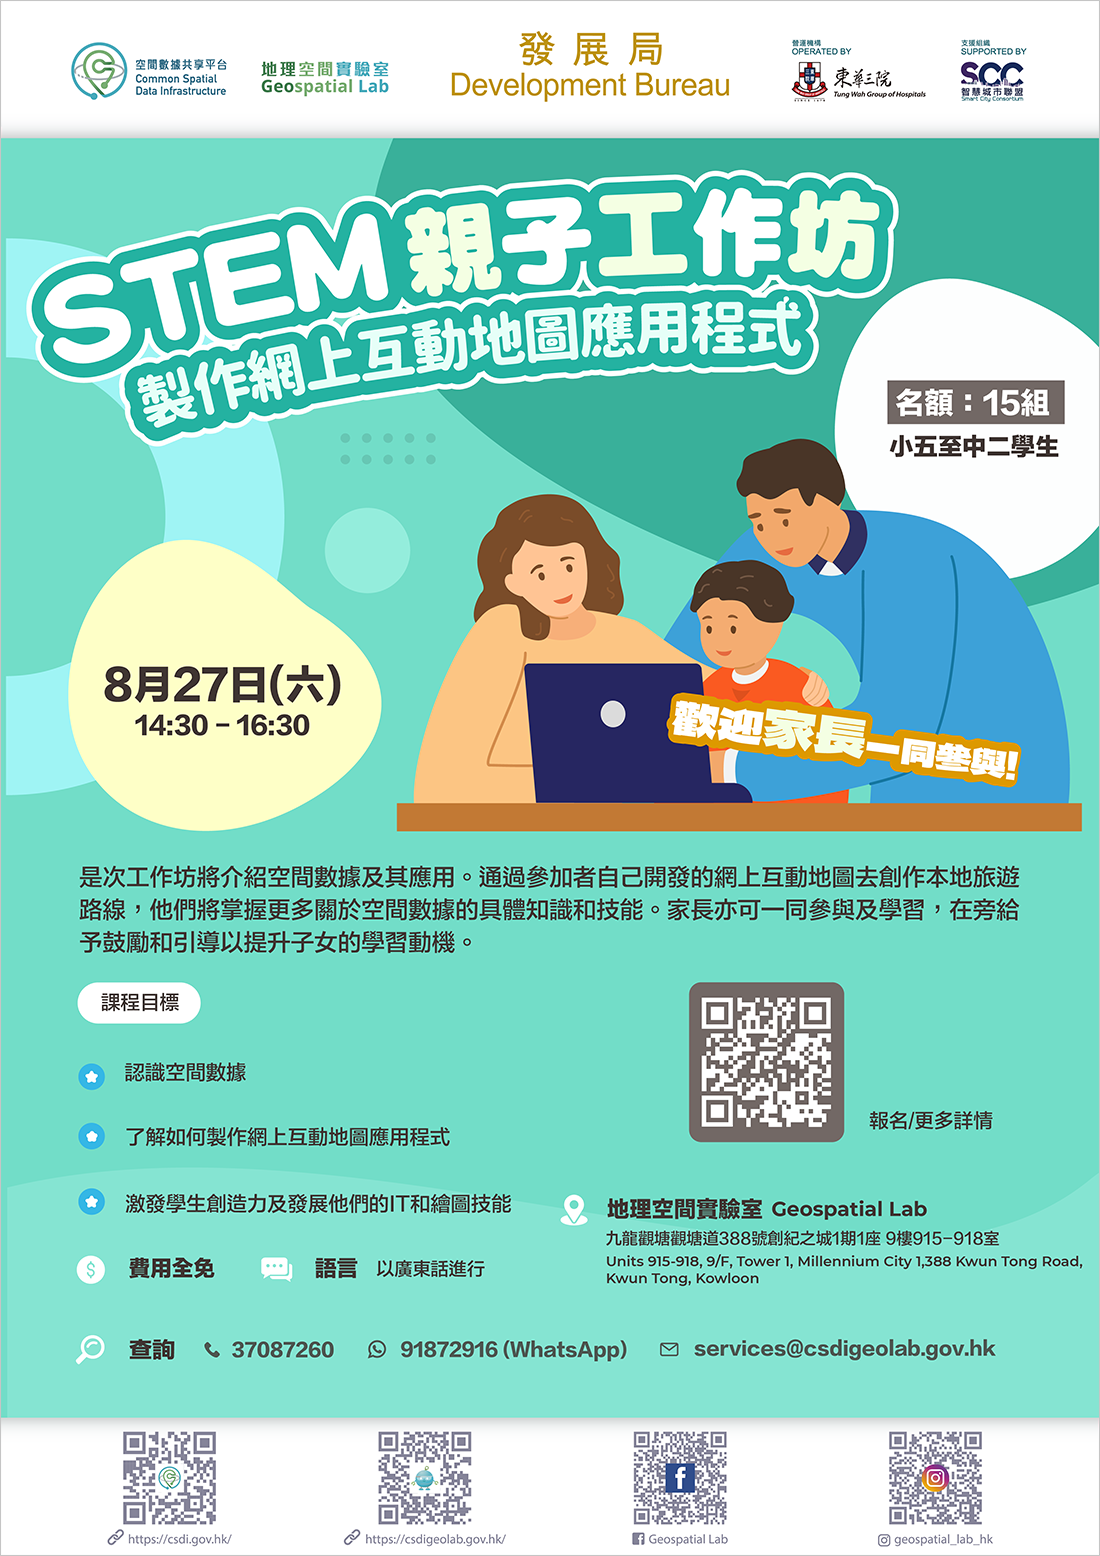 STEM Parent-child Workshop